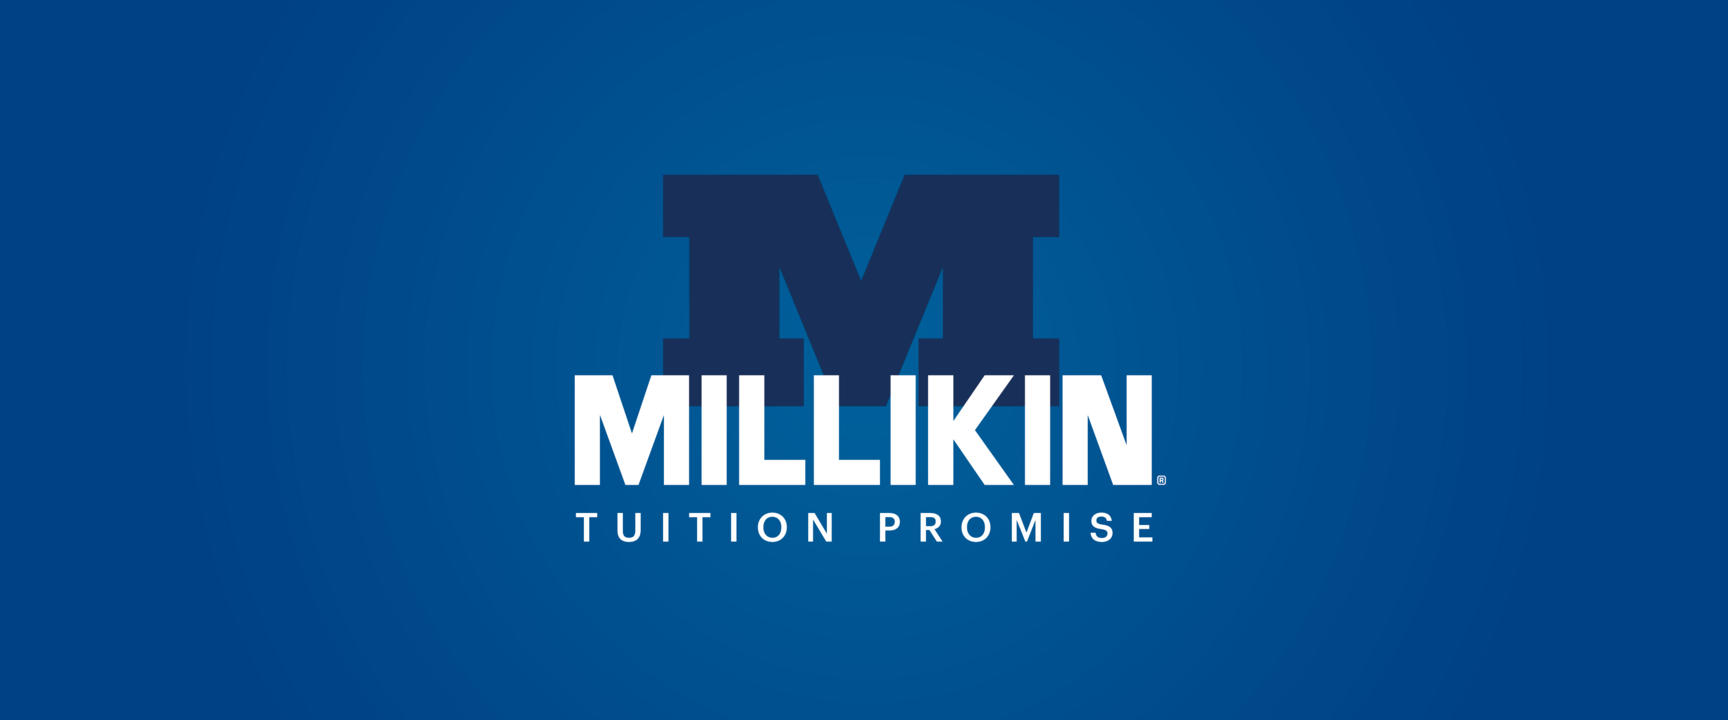 Millikin tuition promise